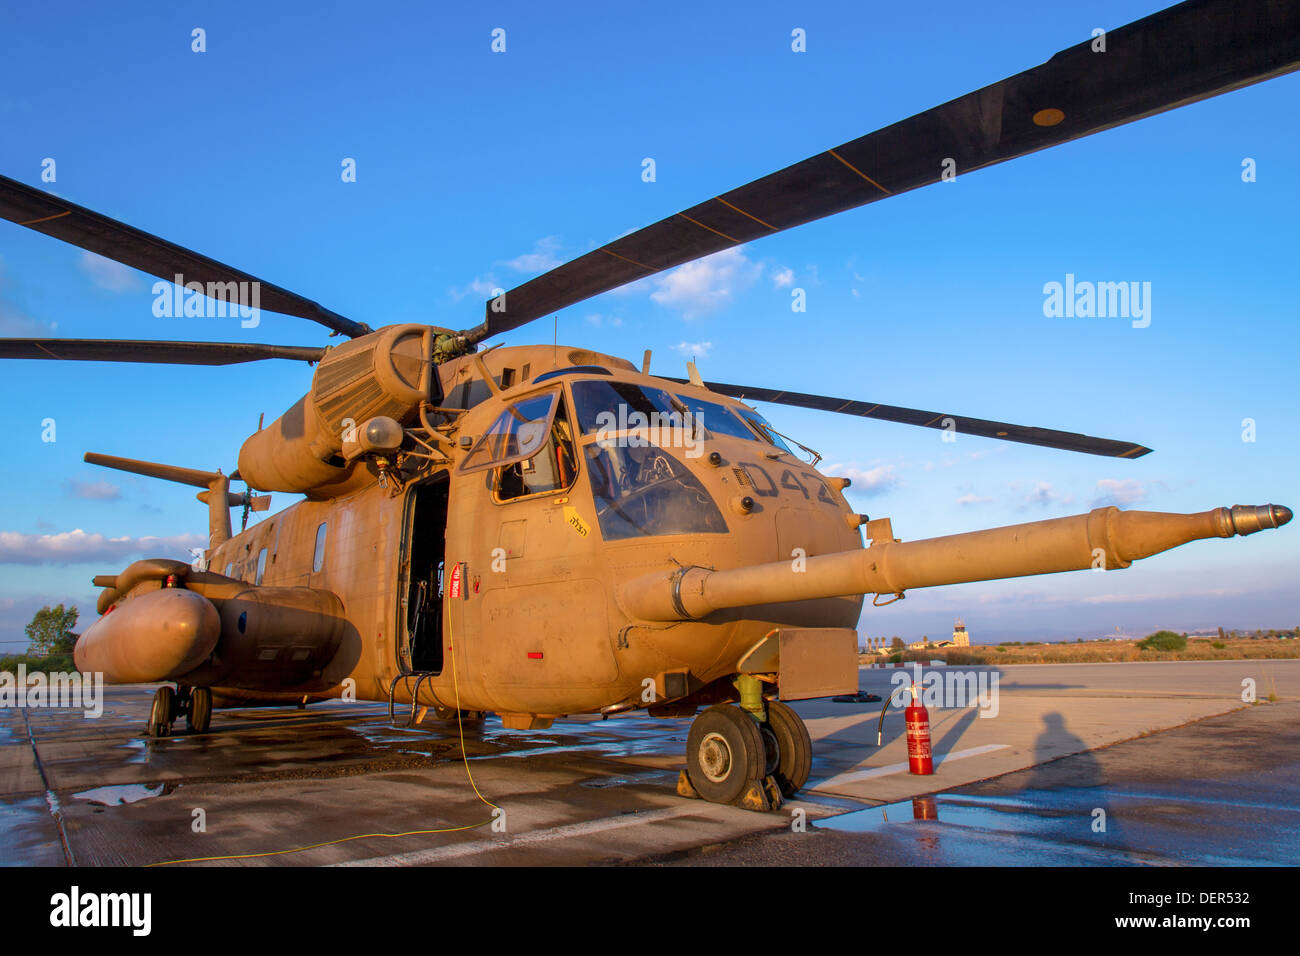 De l'air israélienne (IAF) hélicoptère Sikorsky CH-53 sur le terrain Banque D'Images